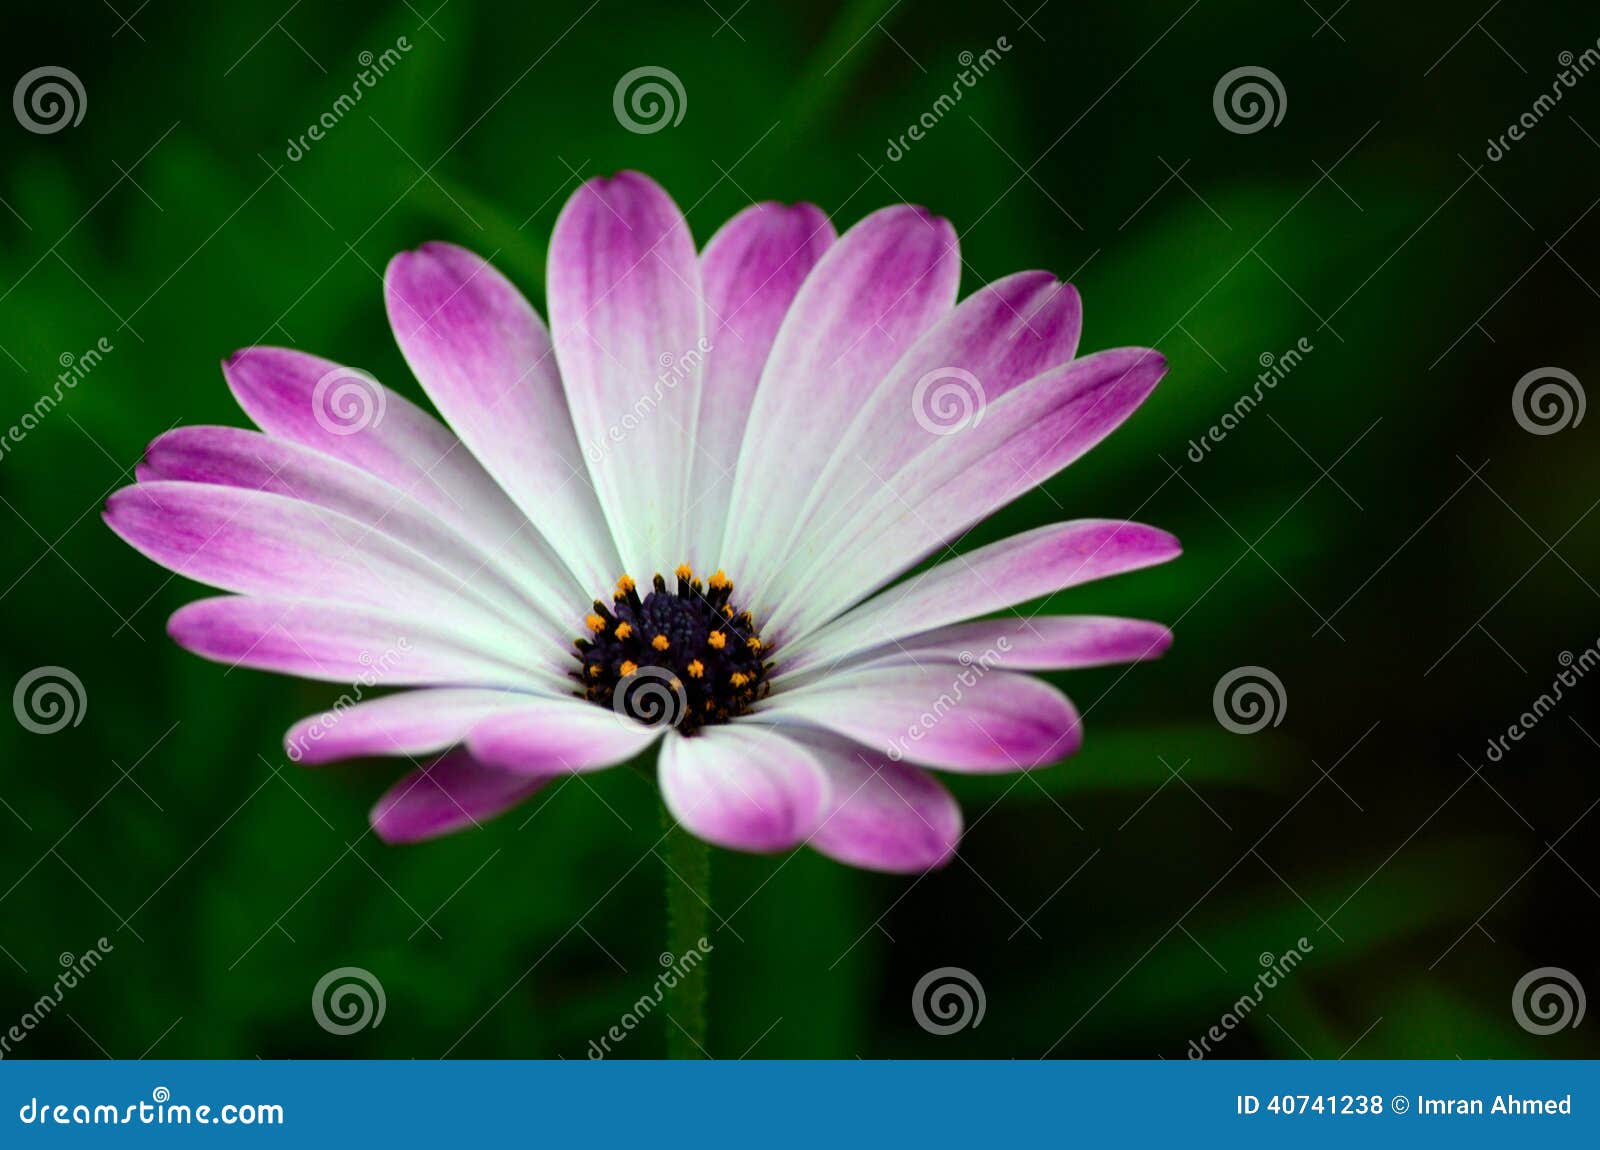 Les Pétales De Fleur Violette Et Blanche Avec Les Stamens Jaunes Fleurit  Photo stock - Image du lames, centre: 40741238